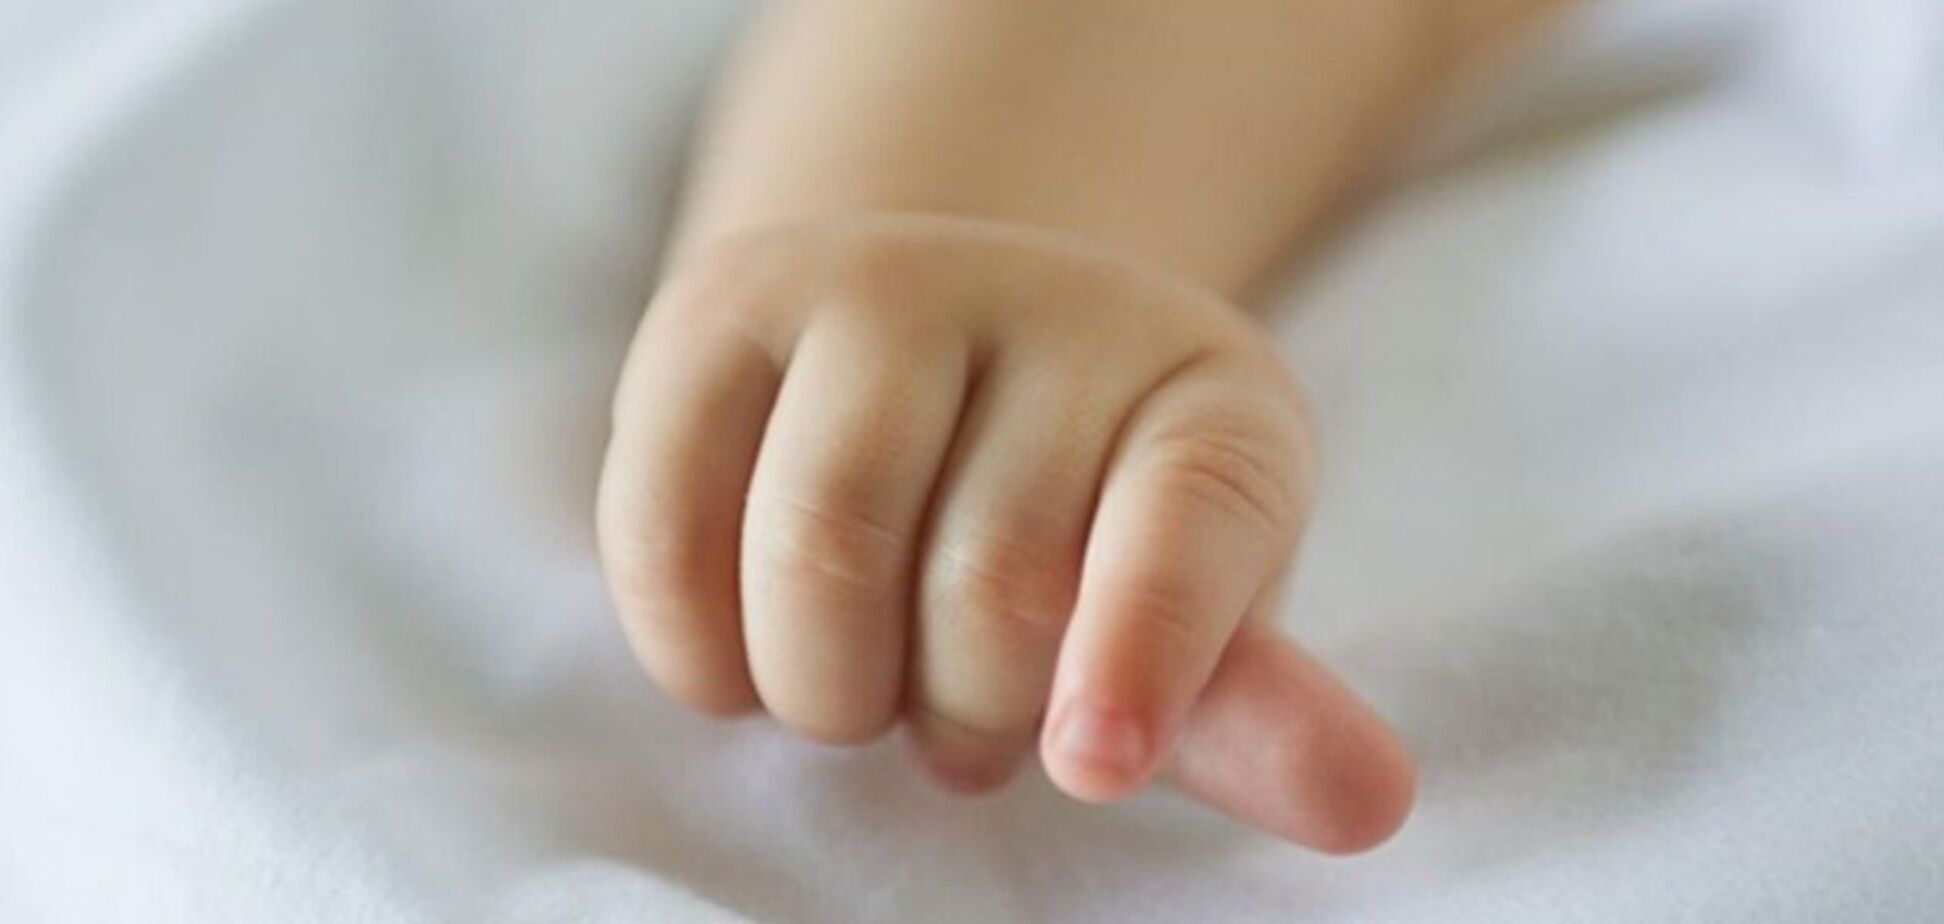 Причини смерті малюка поки невідомі